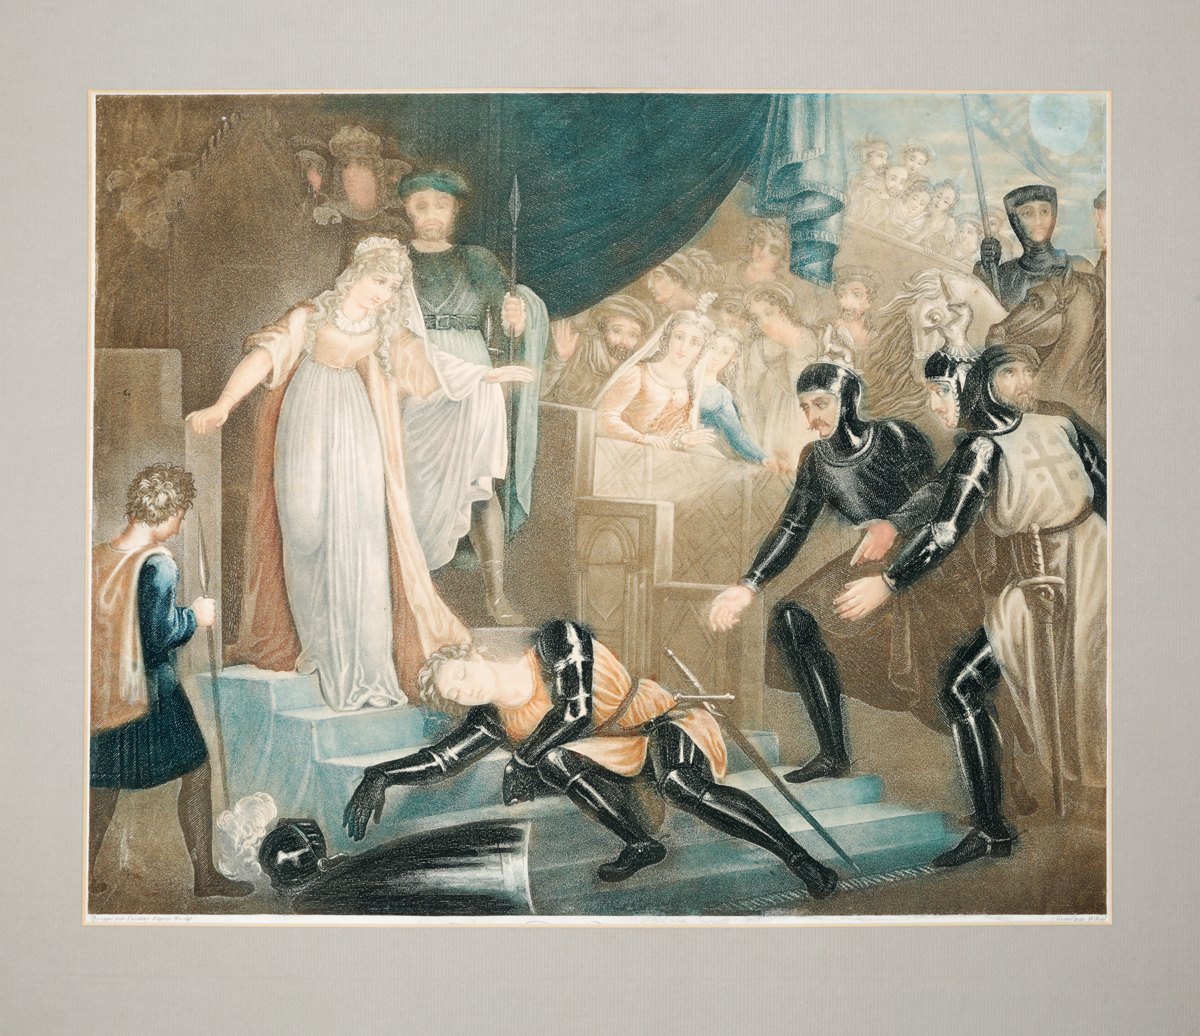 Дама в костюме рыцаря на поединке. Цветная акватинта. Западная Европа, 1830-е гг.